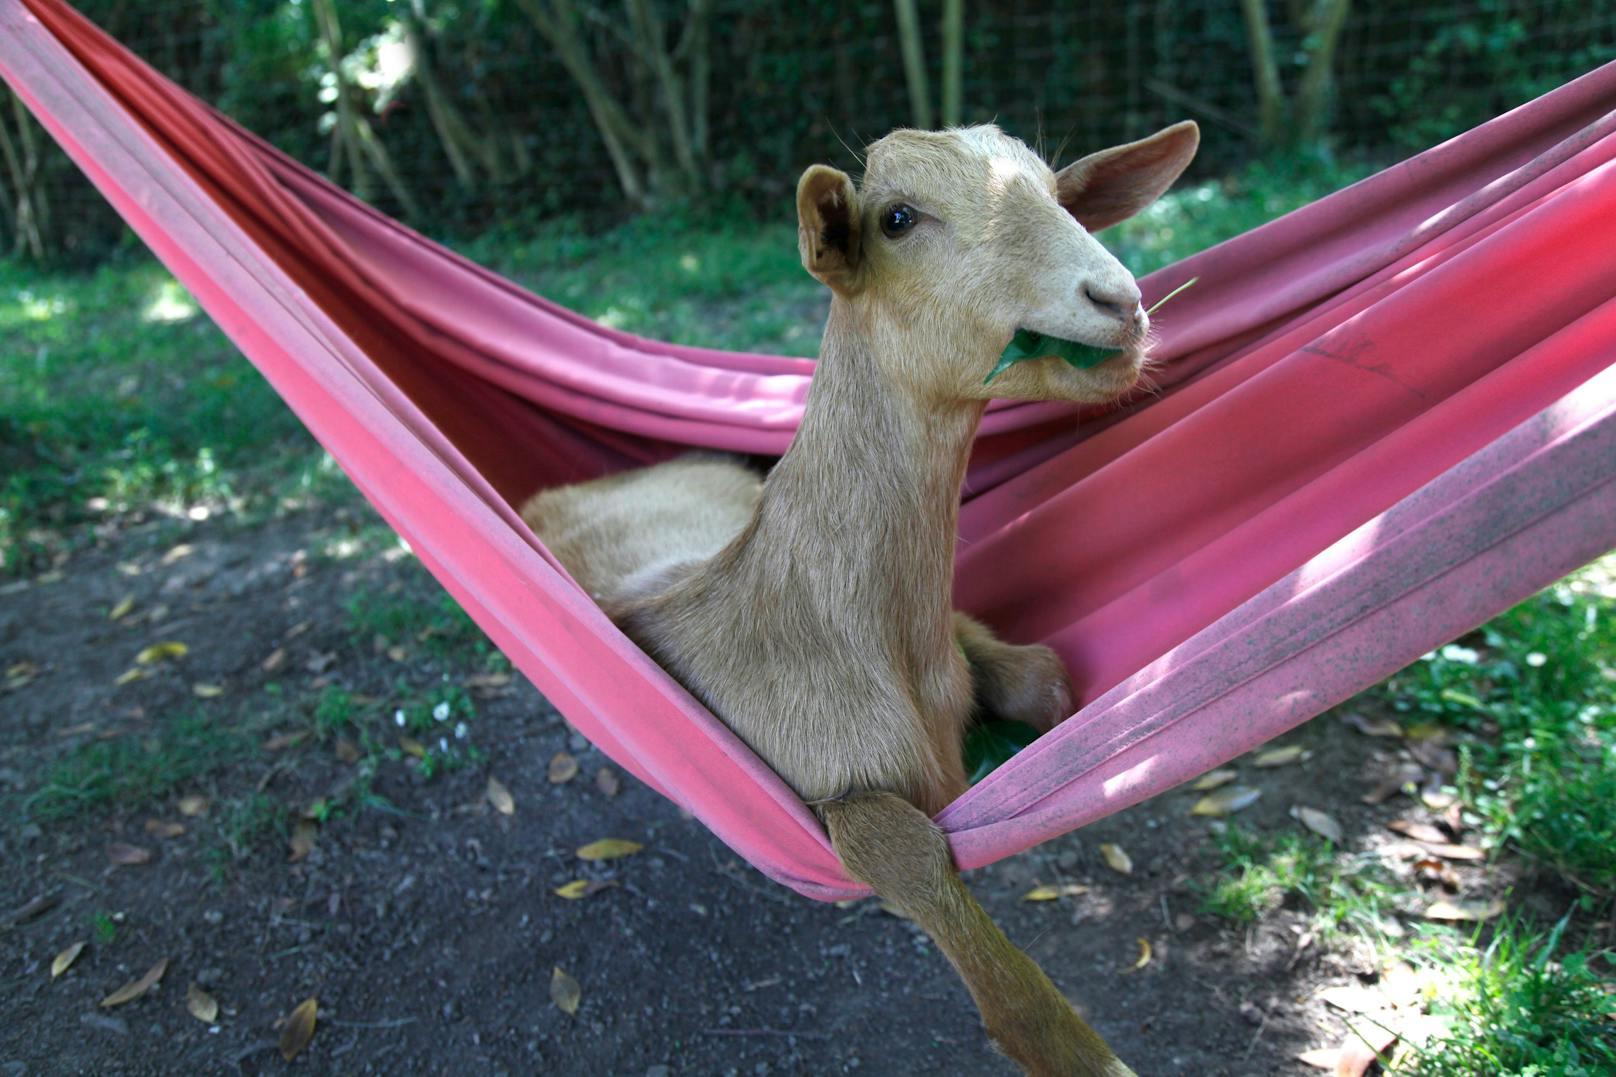 "<strong>Goat relax time</strong>" kommt aus Spanien und zeigt einen offensichtlich sehr entspannte Ziege in der Hängematte. 